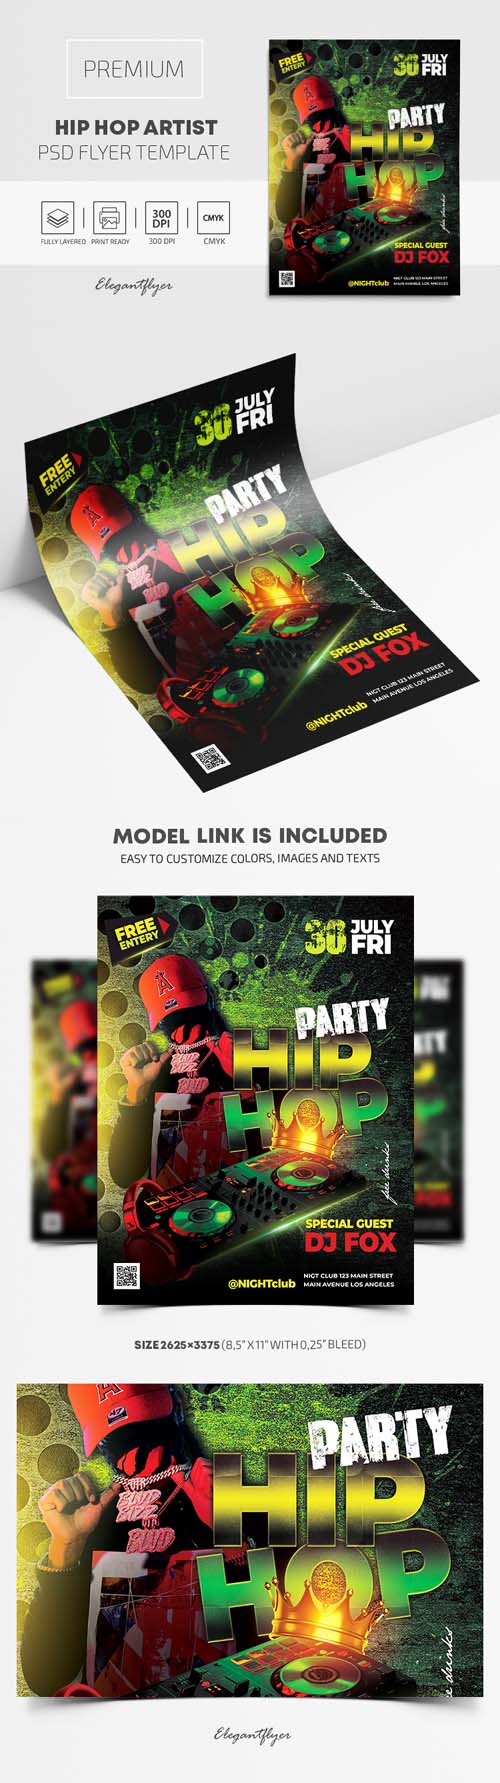 Hip Hop Artist Premium PSD Flyer Template